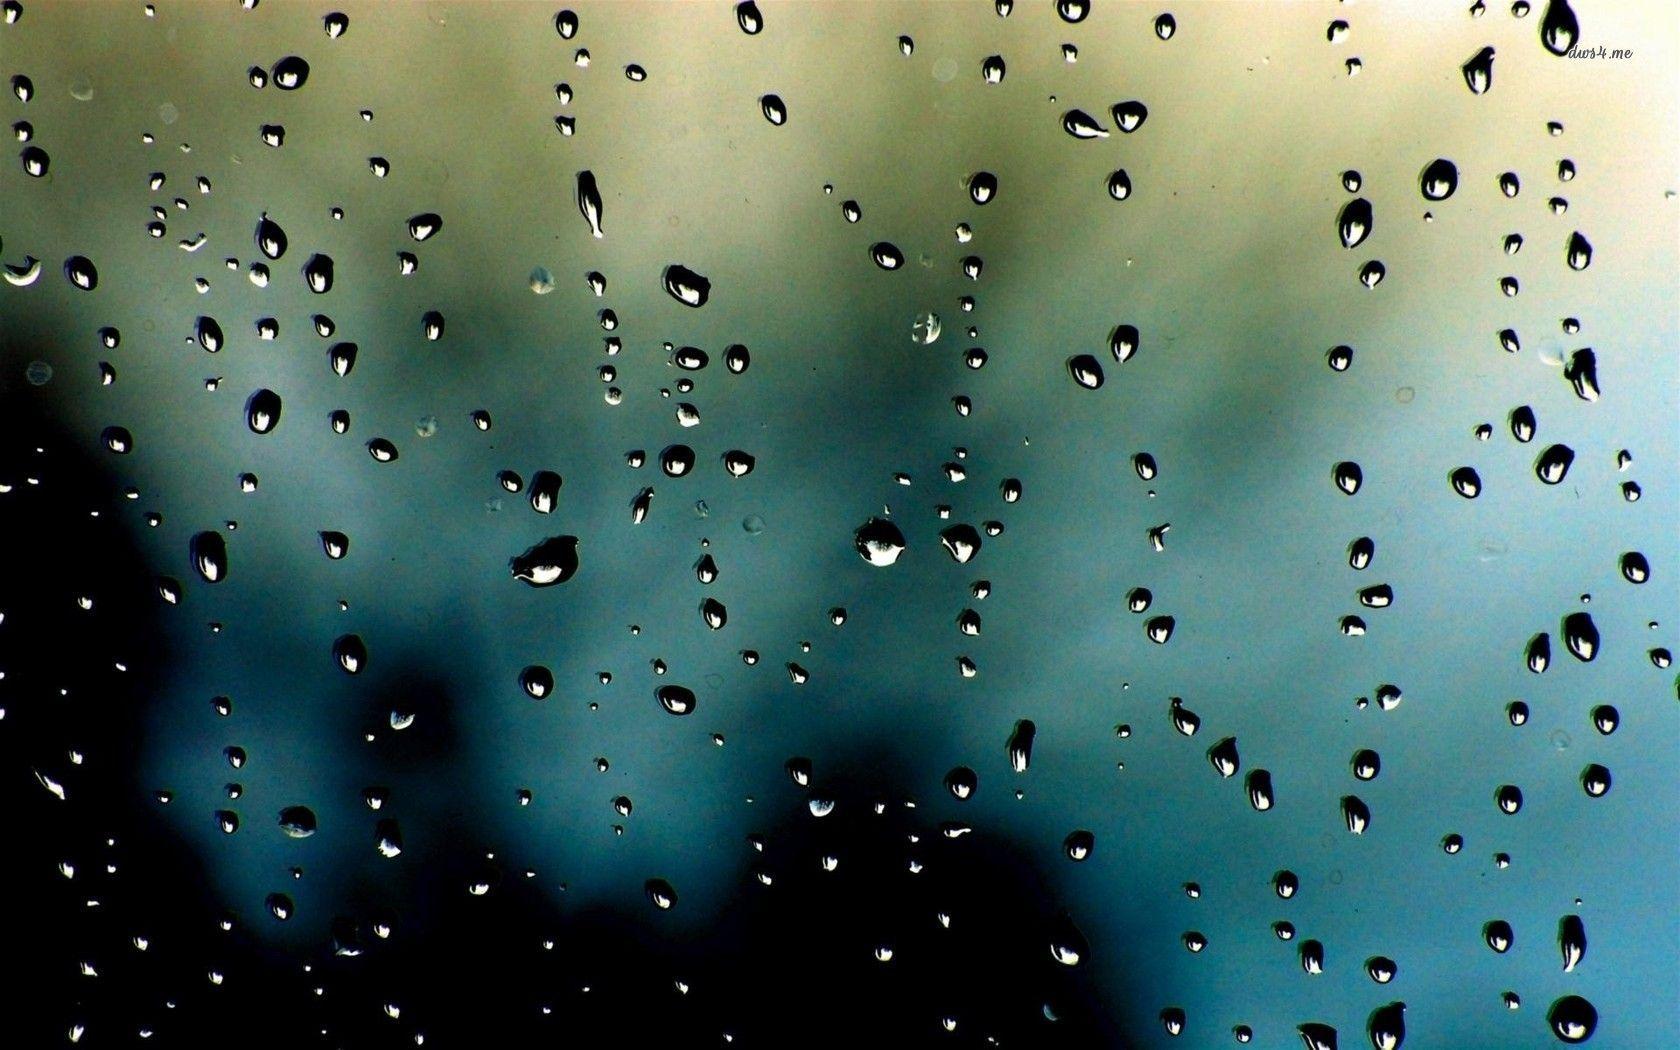 raindrops live wallpaper hd apk